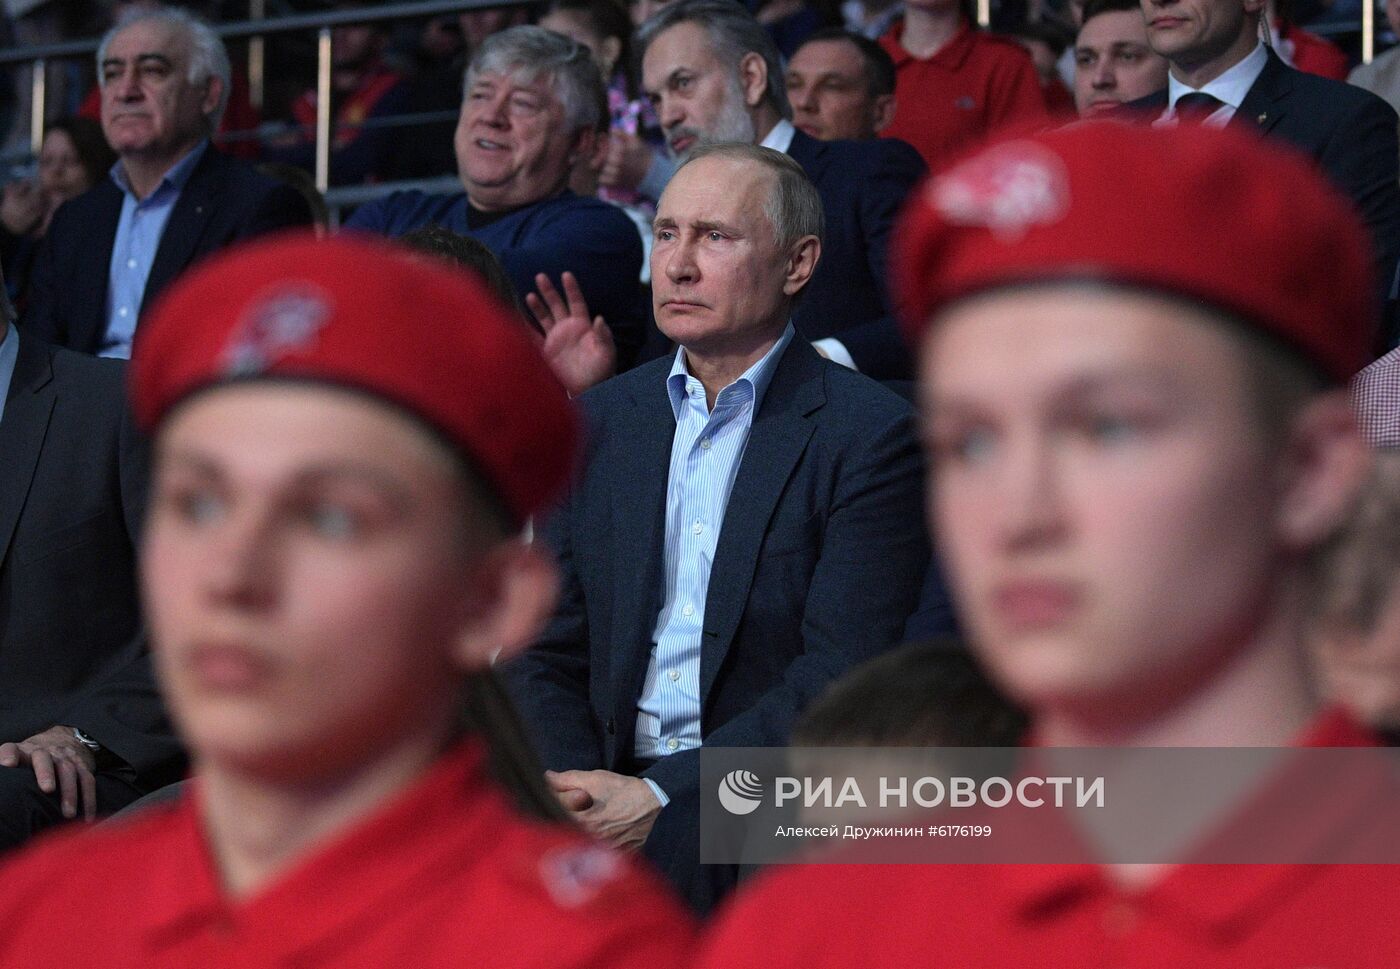 Рабочая поездка президента В. Путина в Сочи